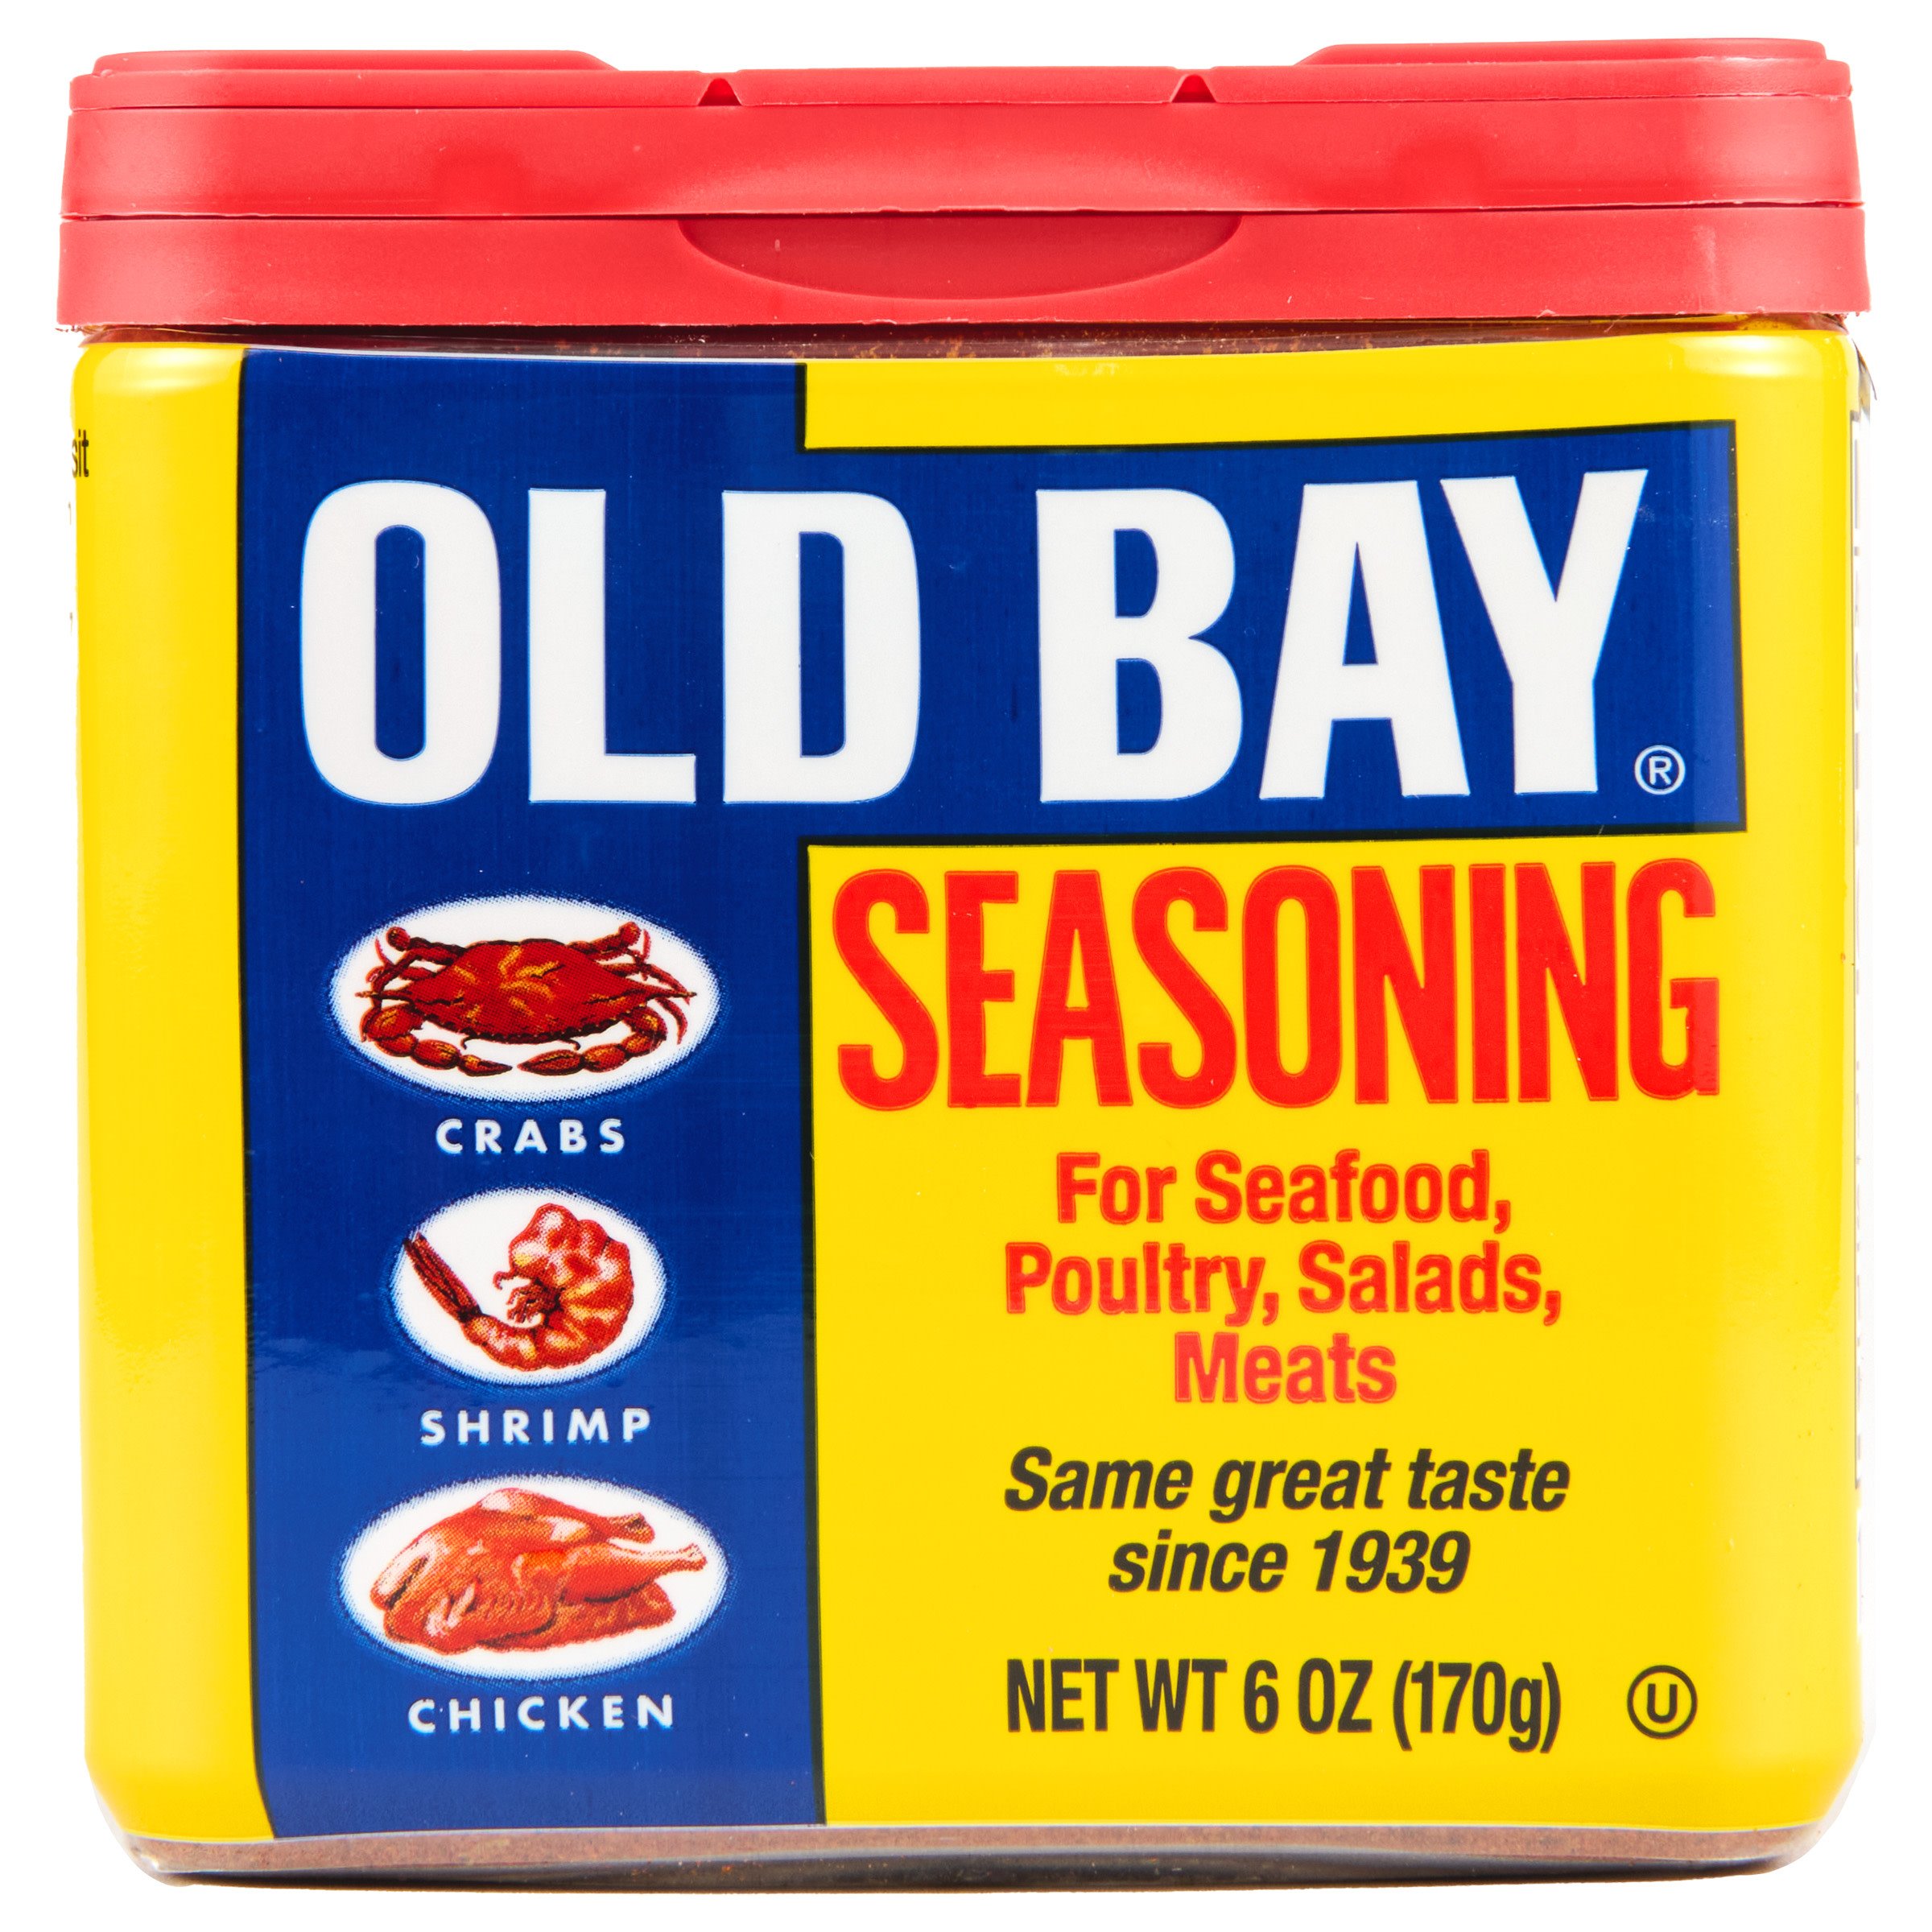 Chesapeake Bay Seasoning